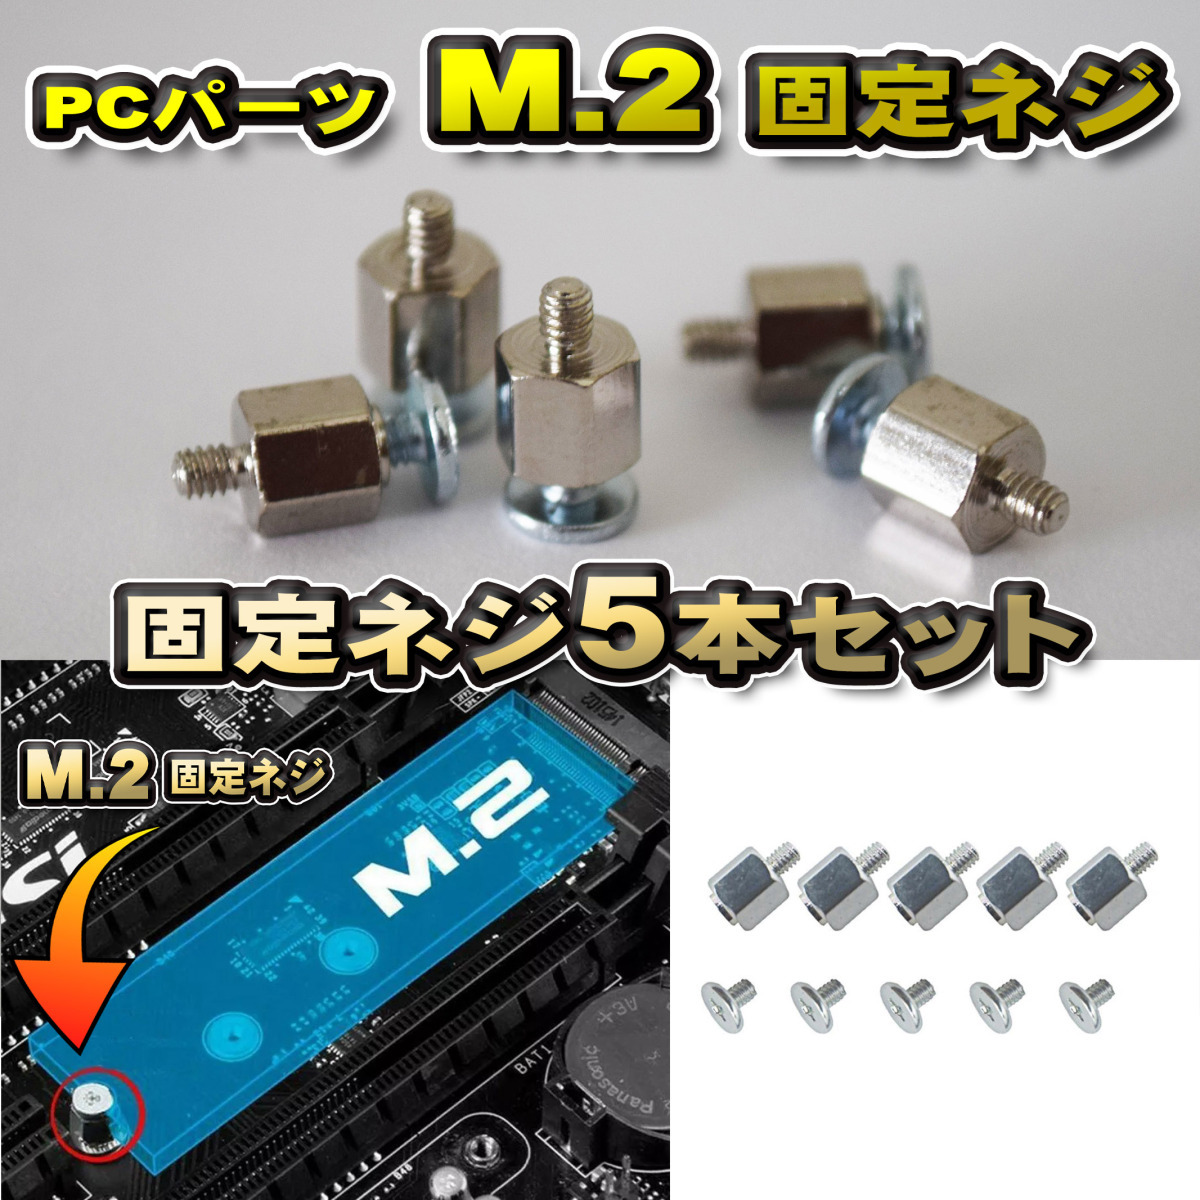 【パーツ固定ネジ】 PCパーツ M.2 固定ネジ 5本セット シルバー_画像1